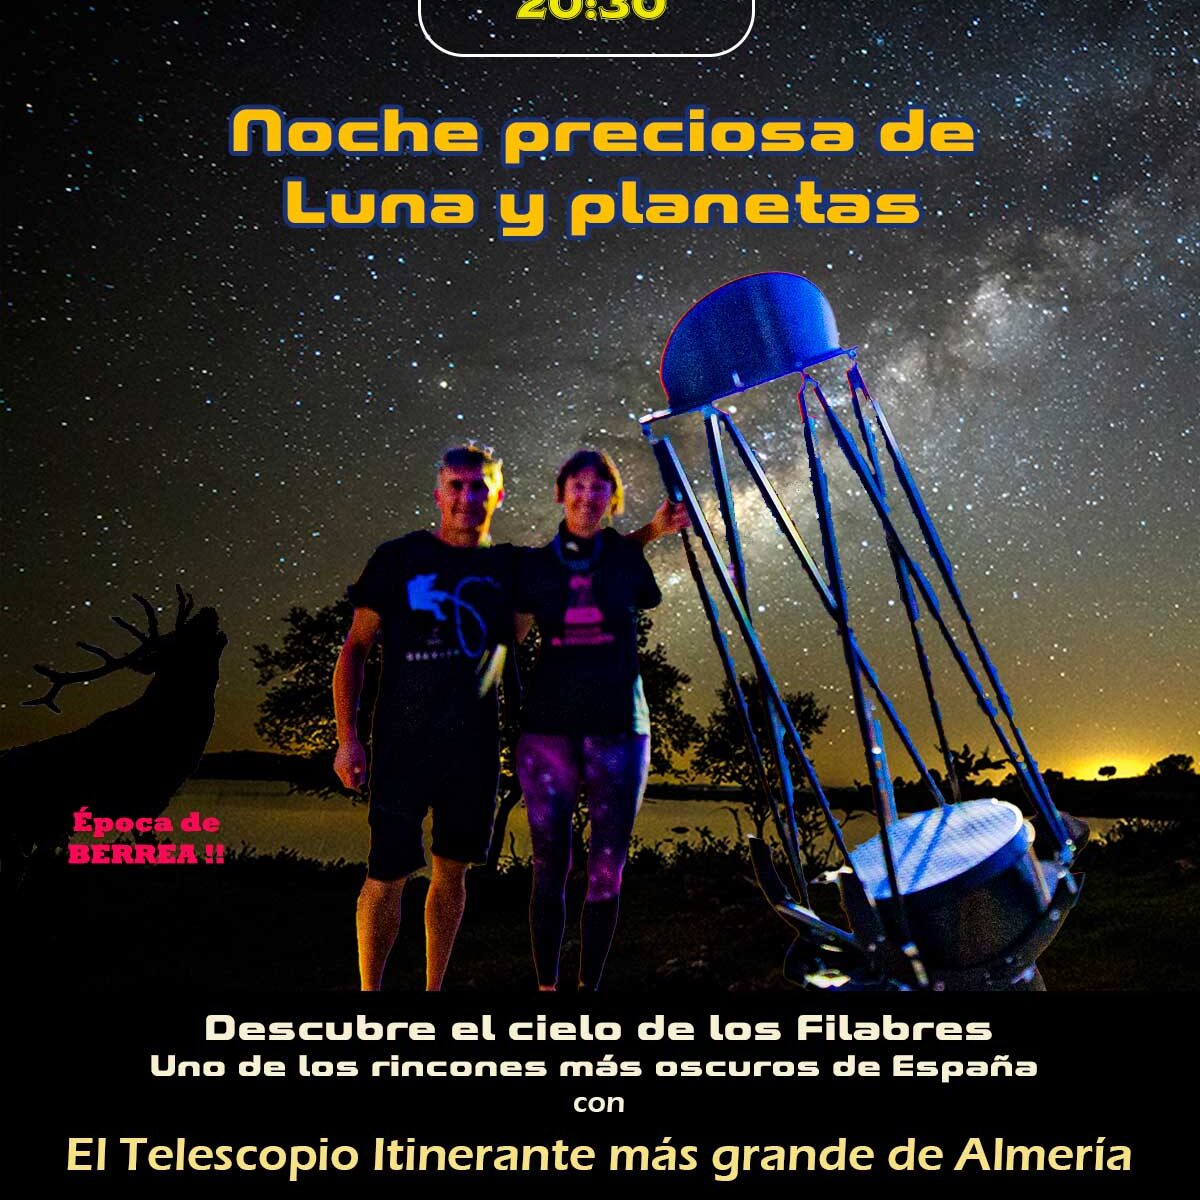 astroturismo Andalucia y Almeria, Sierra de los Filabres